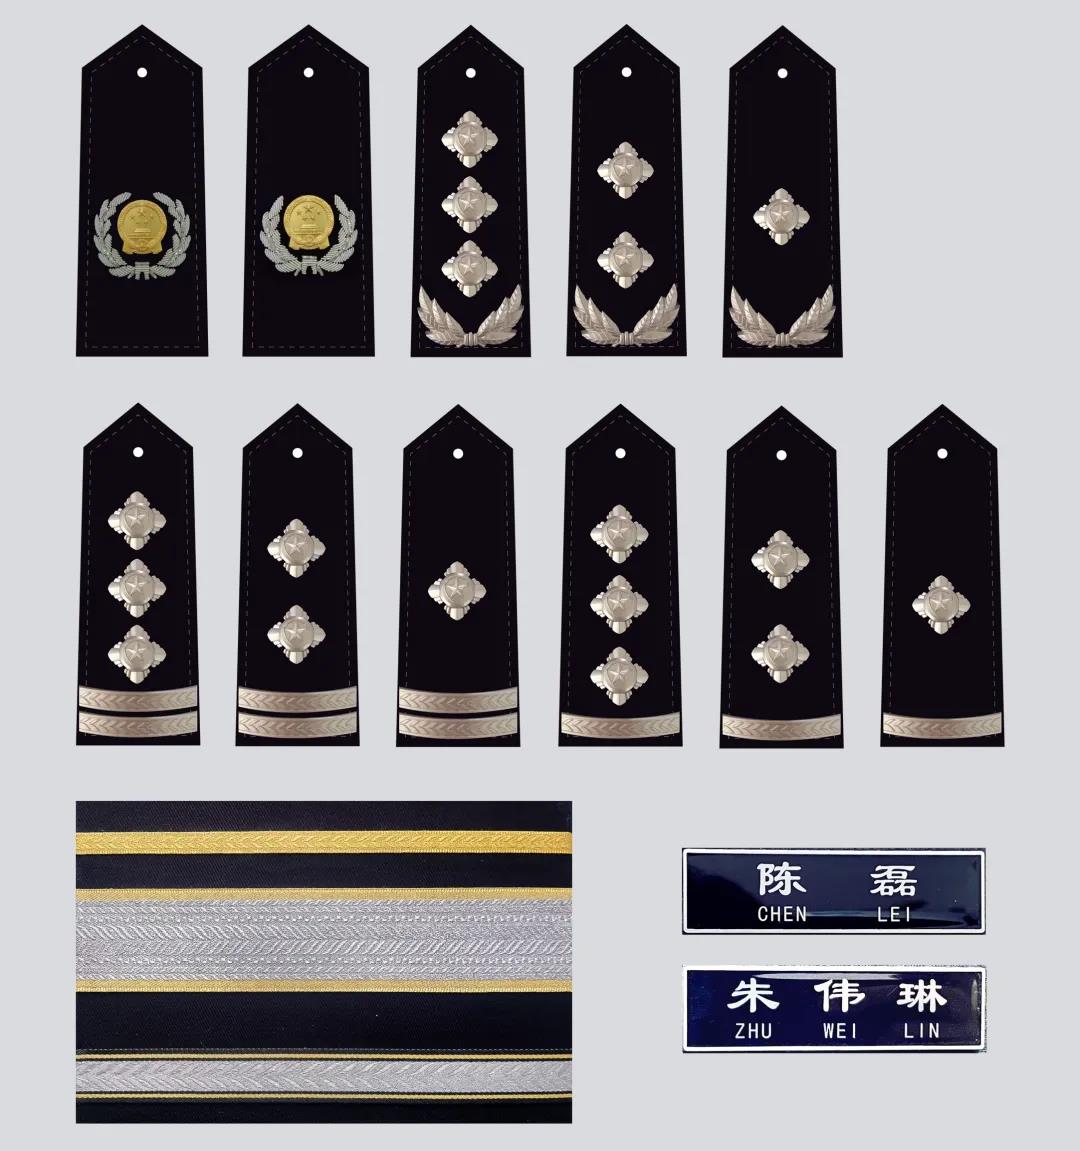 中国人民警察警礼服正式列装清华美院陈磊老师团队承担整体服饰设计